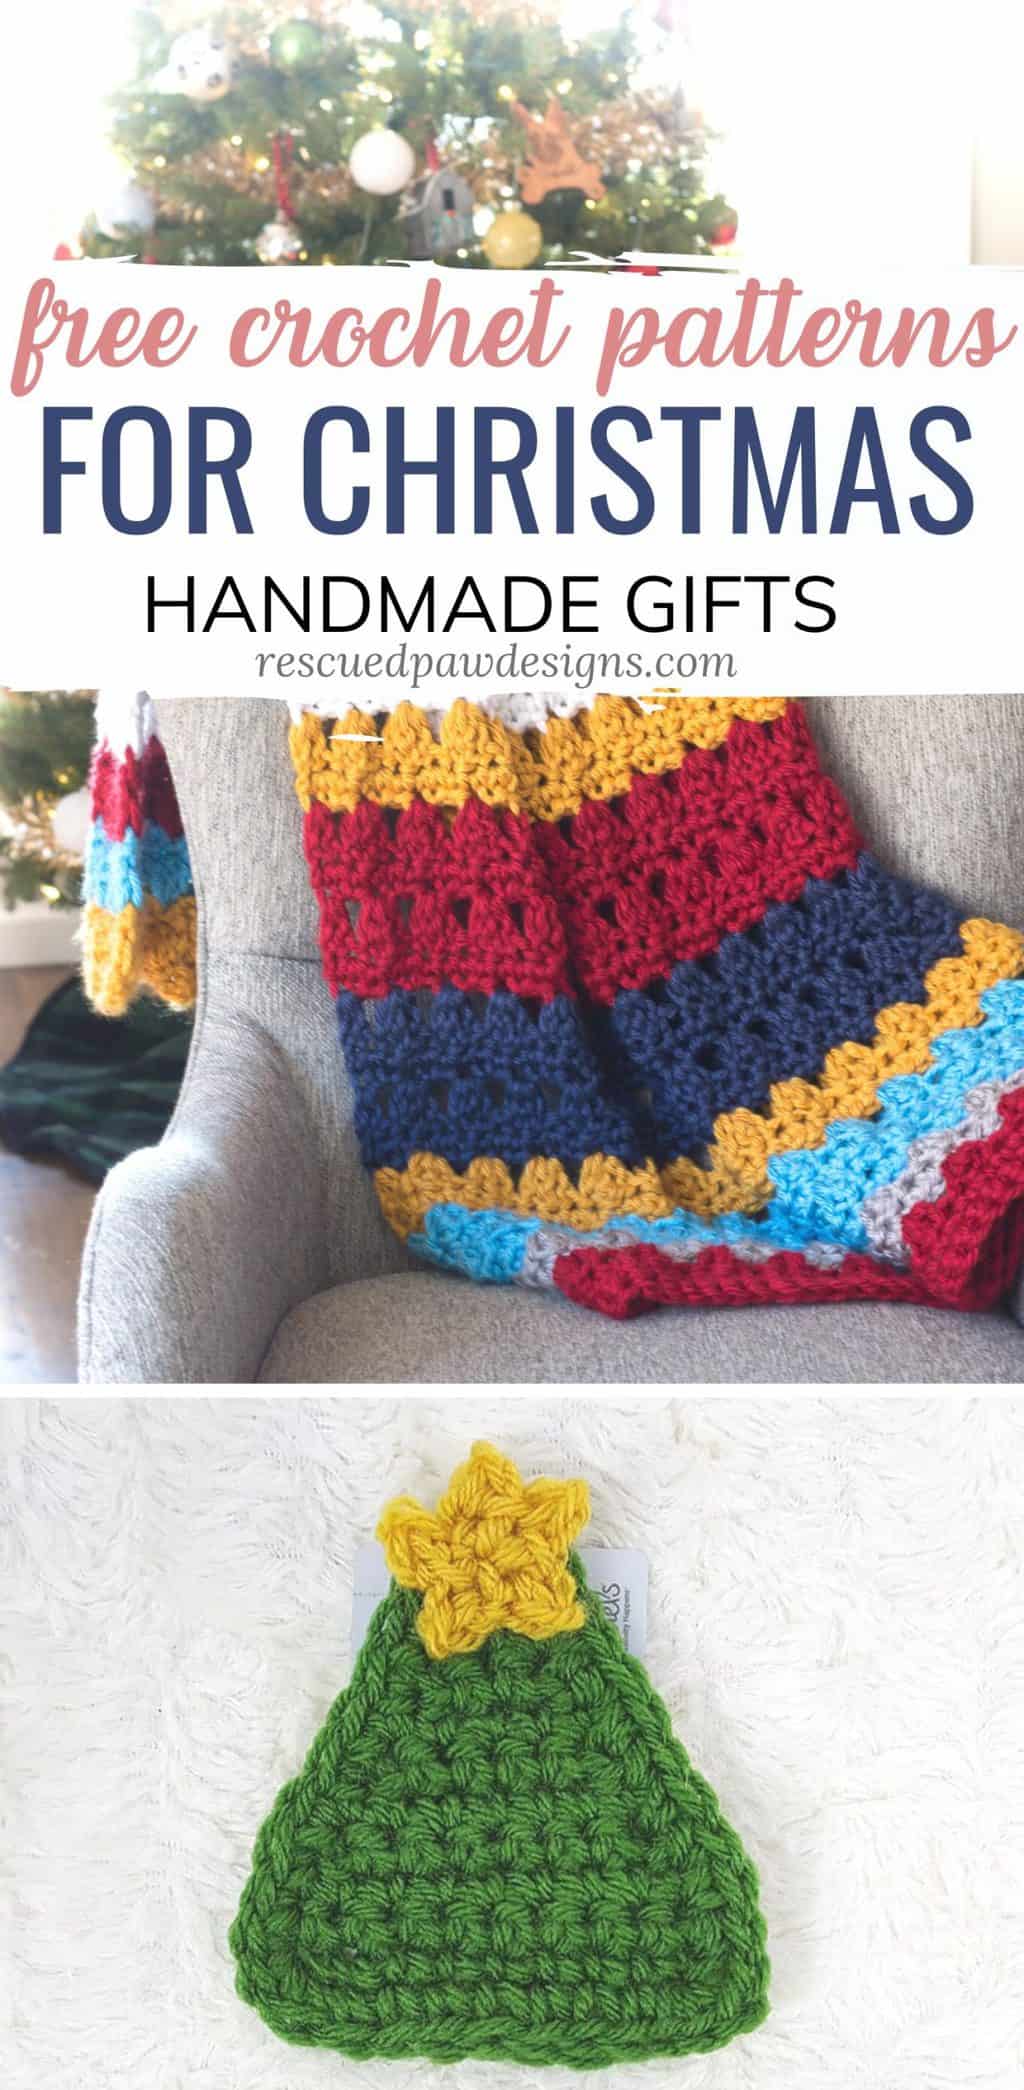 Crochet Christmas Patterns For Gifts Easycrochet Com